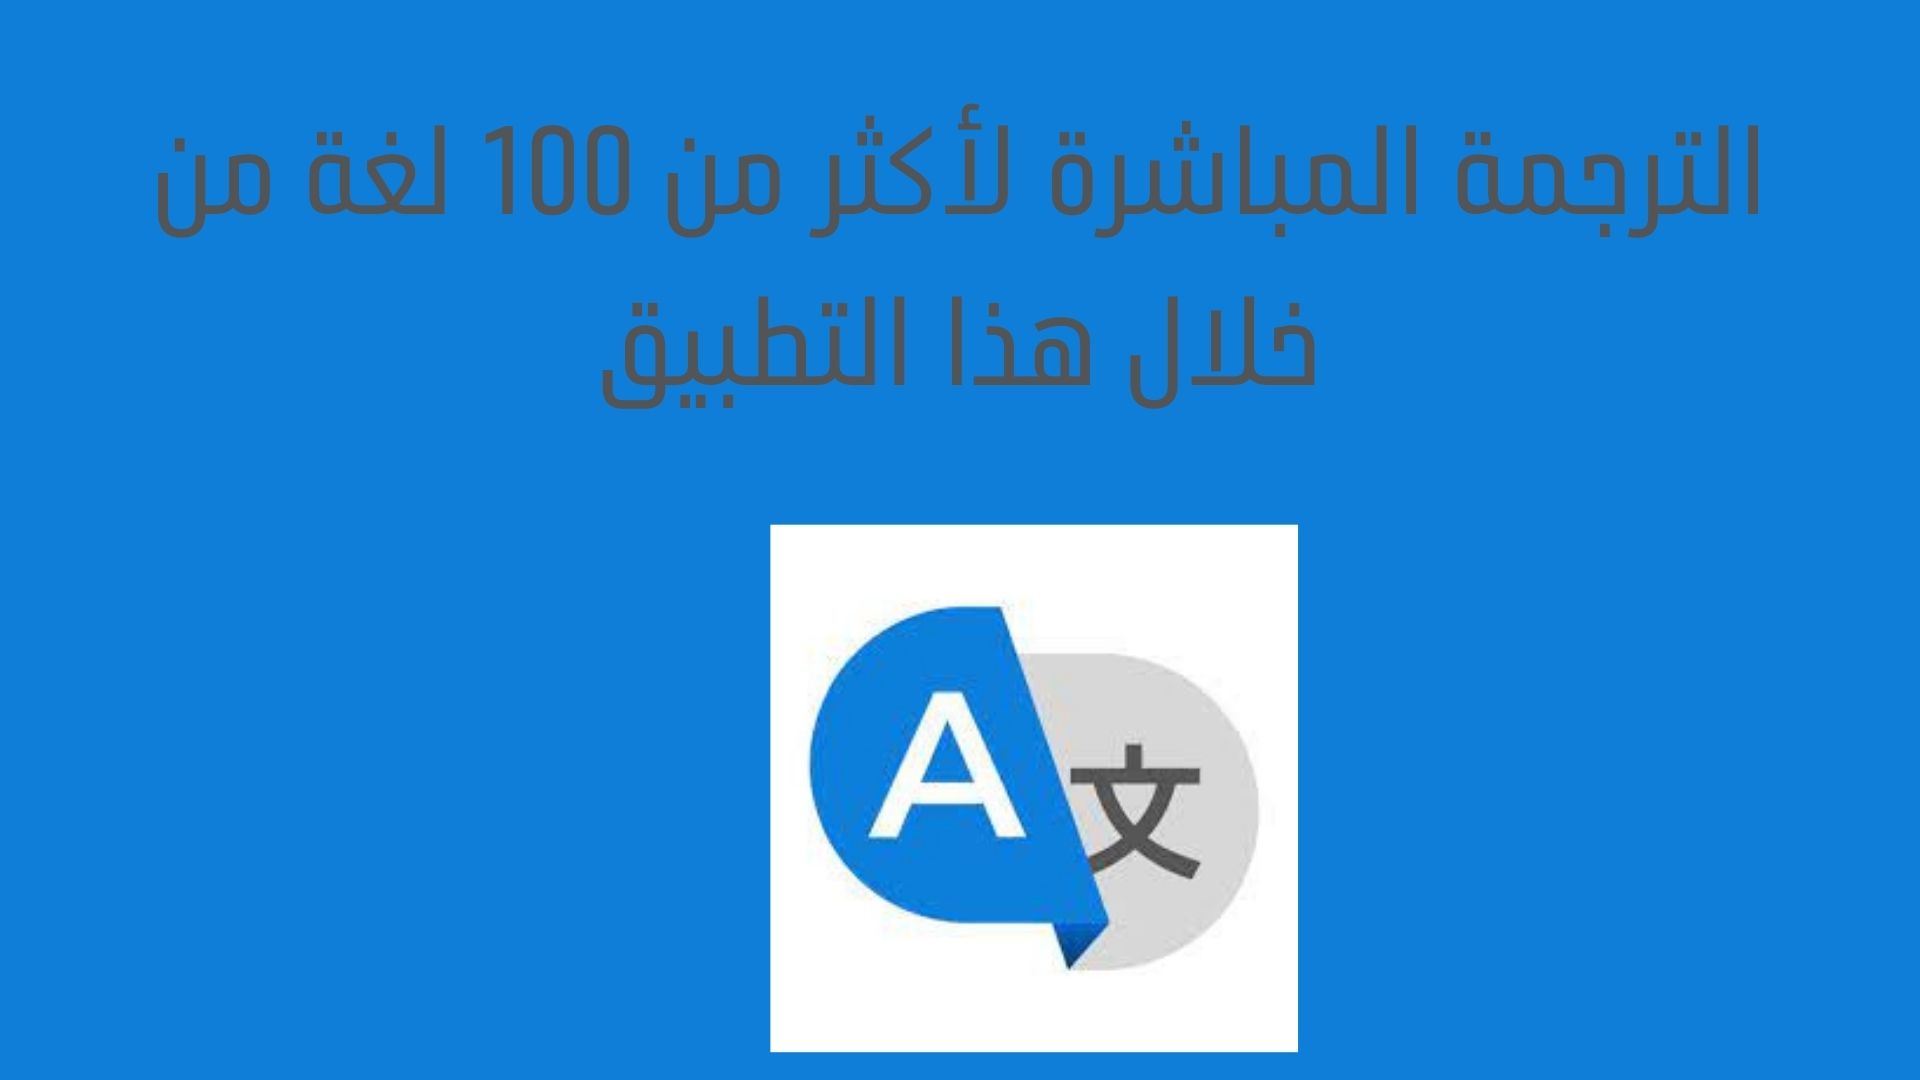 الترجمة المباشرة لأكثر من 100 لغة من خلال هذا التطبيق